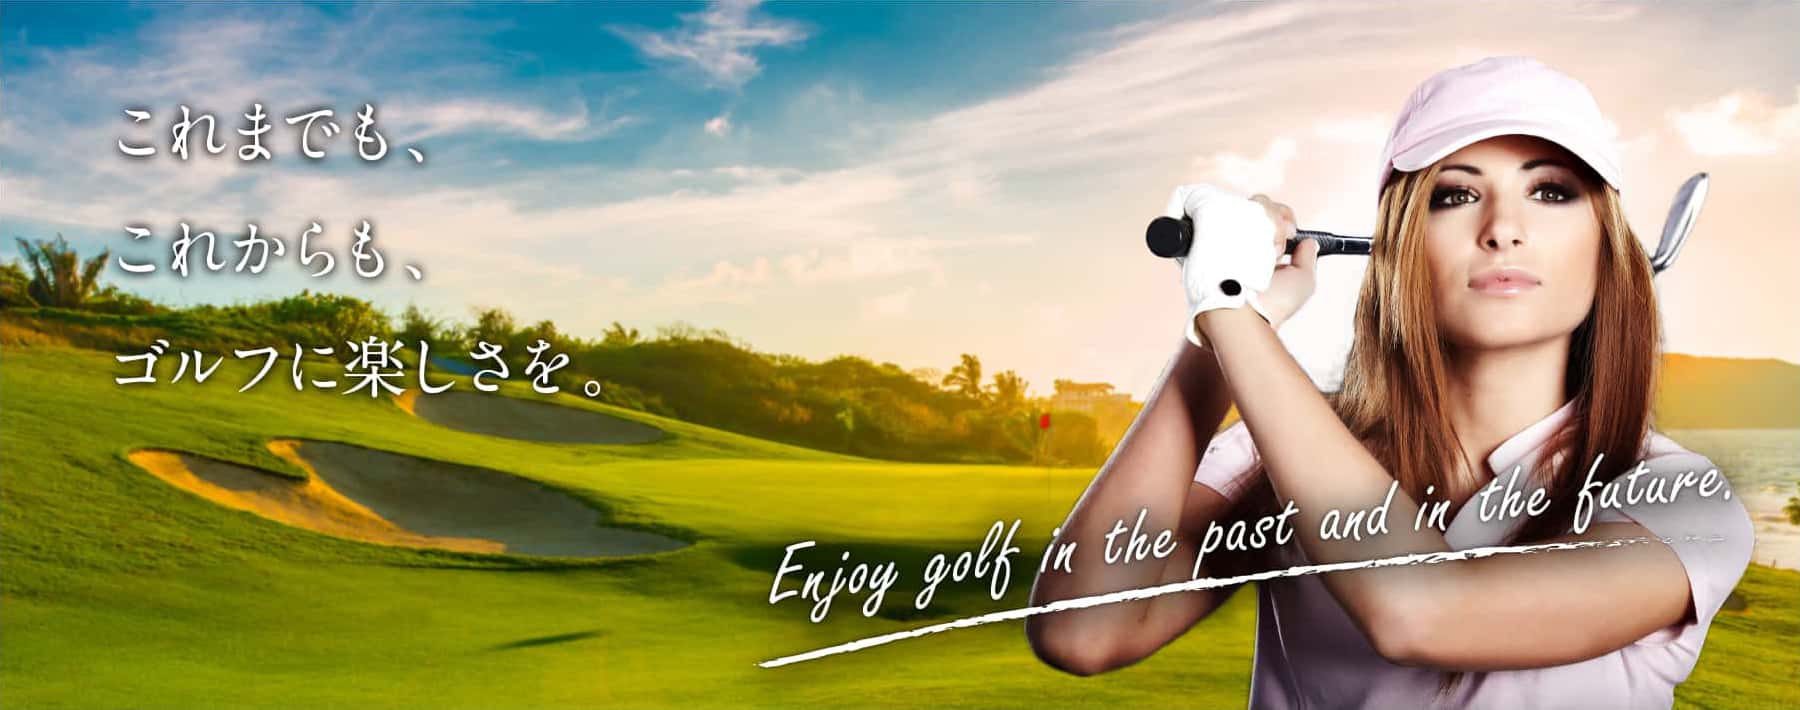 これまでも、これからも、ゴルフに楽しさを。Enjoy golf in the past and in the future.